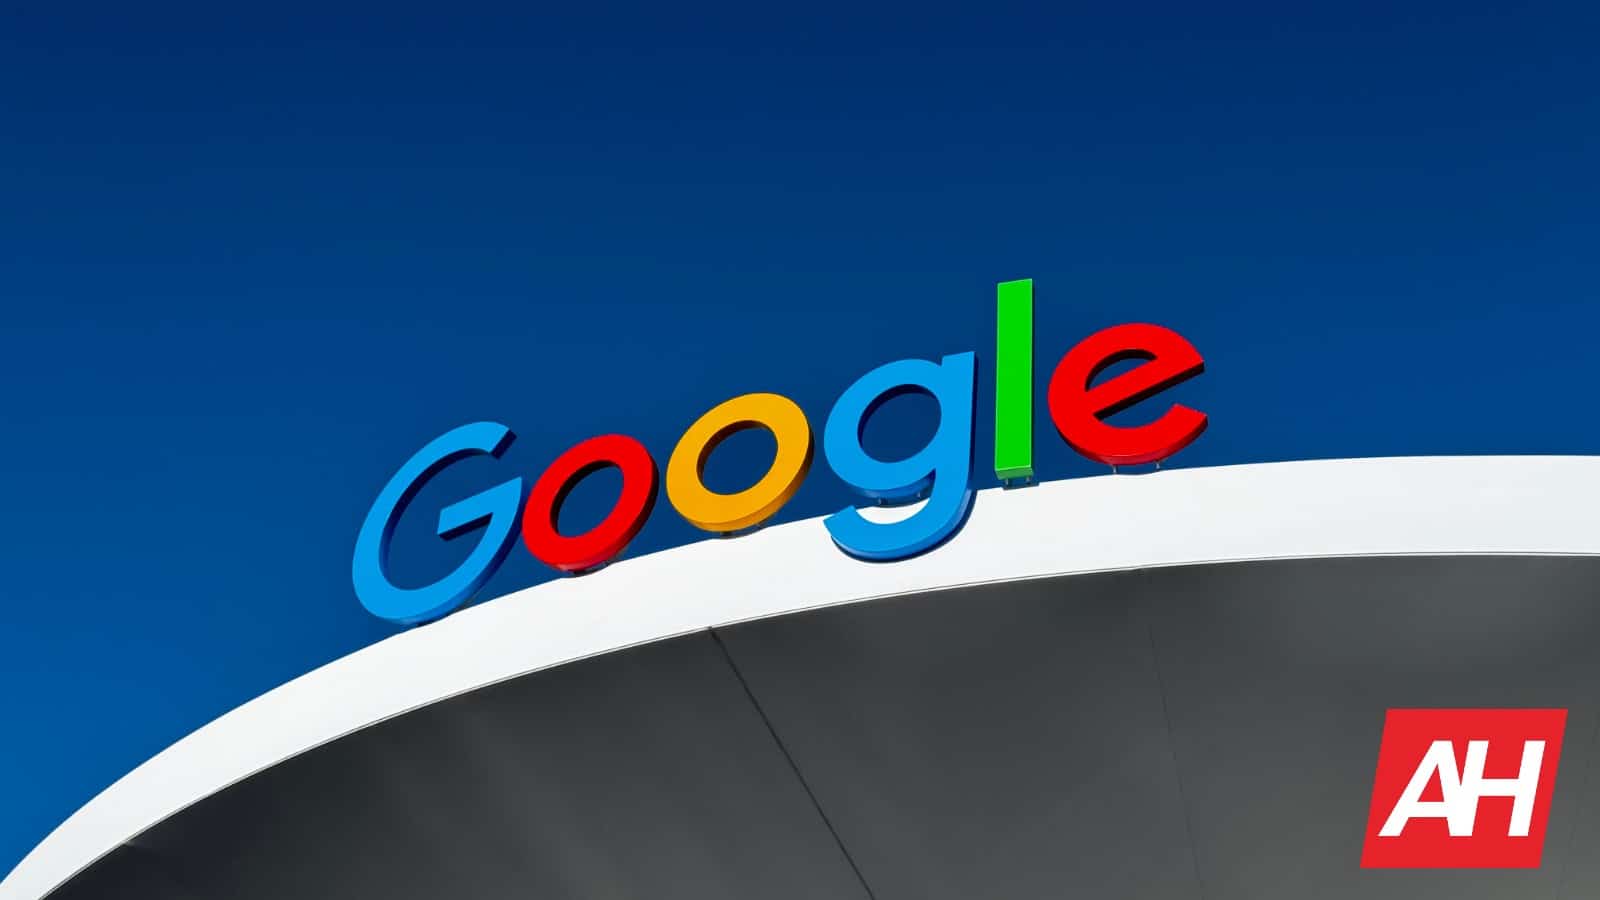 Google One supera los 100 millones de suscriptores, confirma el director ejecutivo